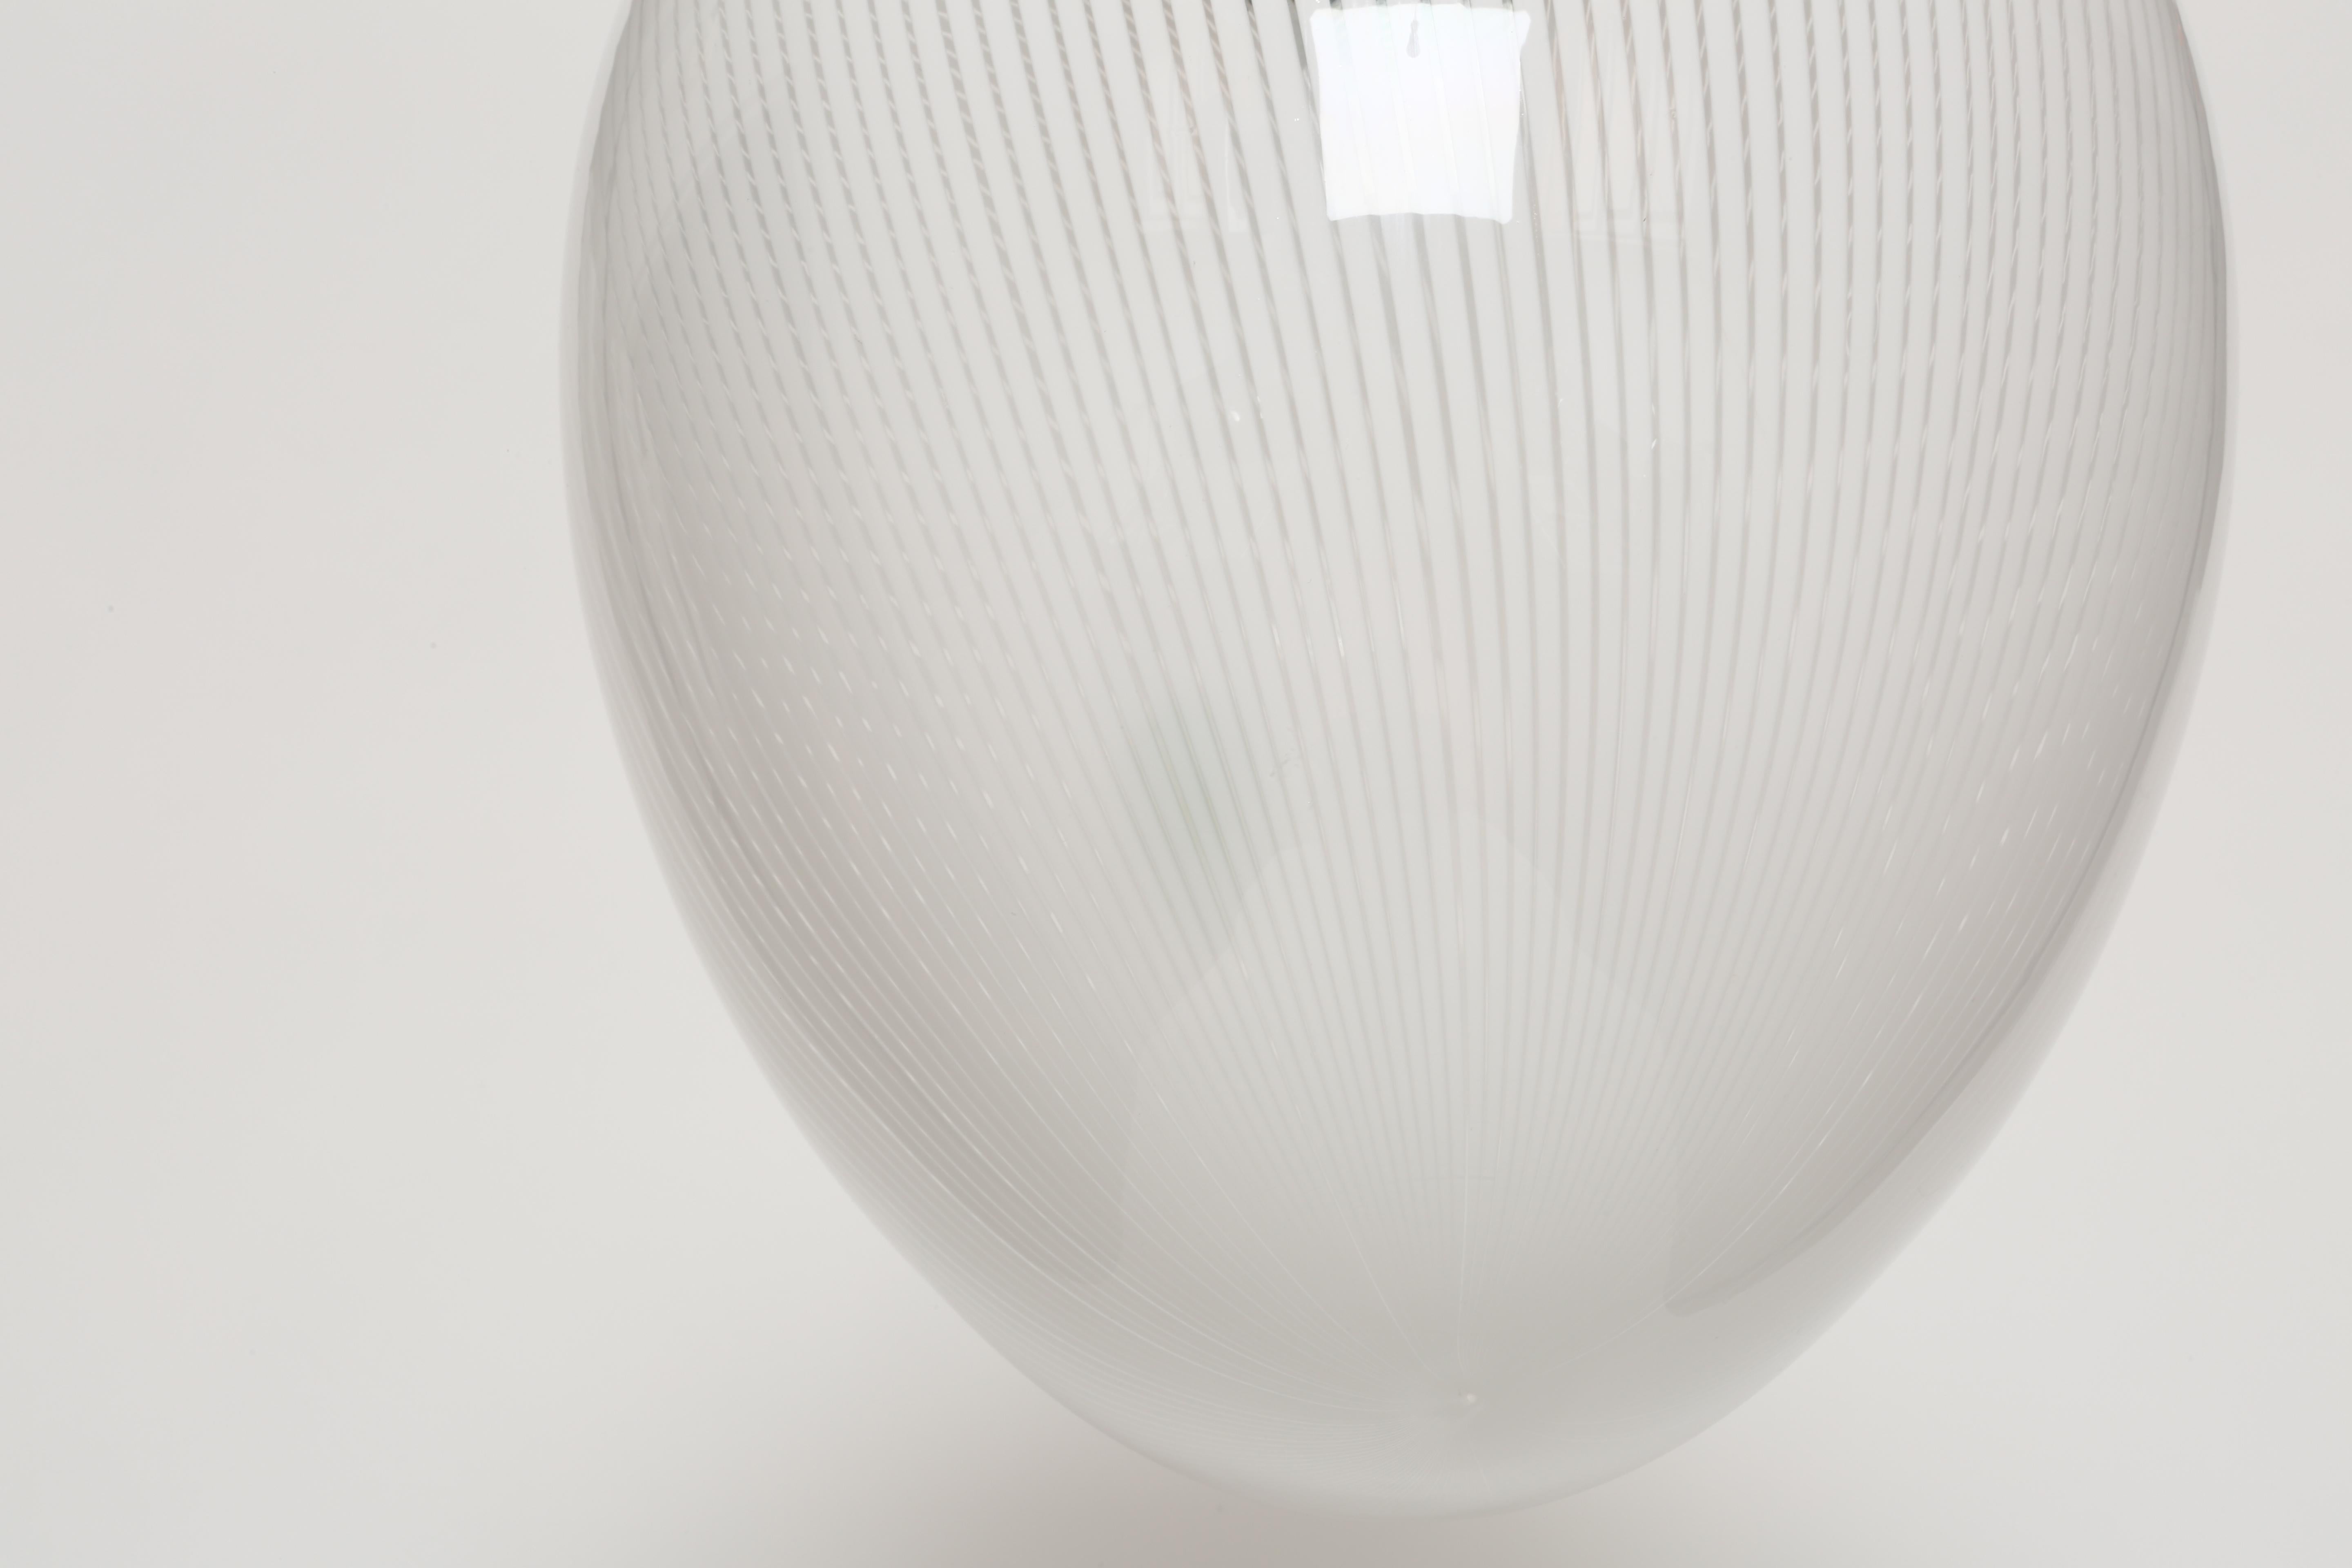 Murano Glass Globe Pendant 1